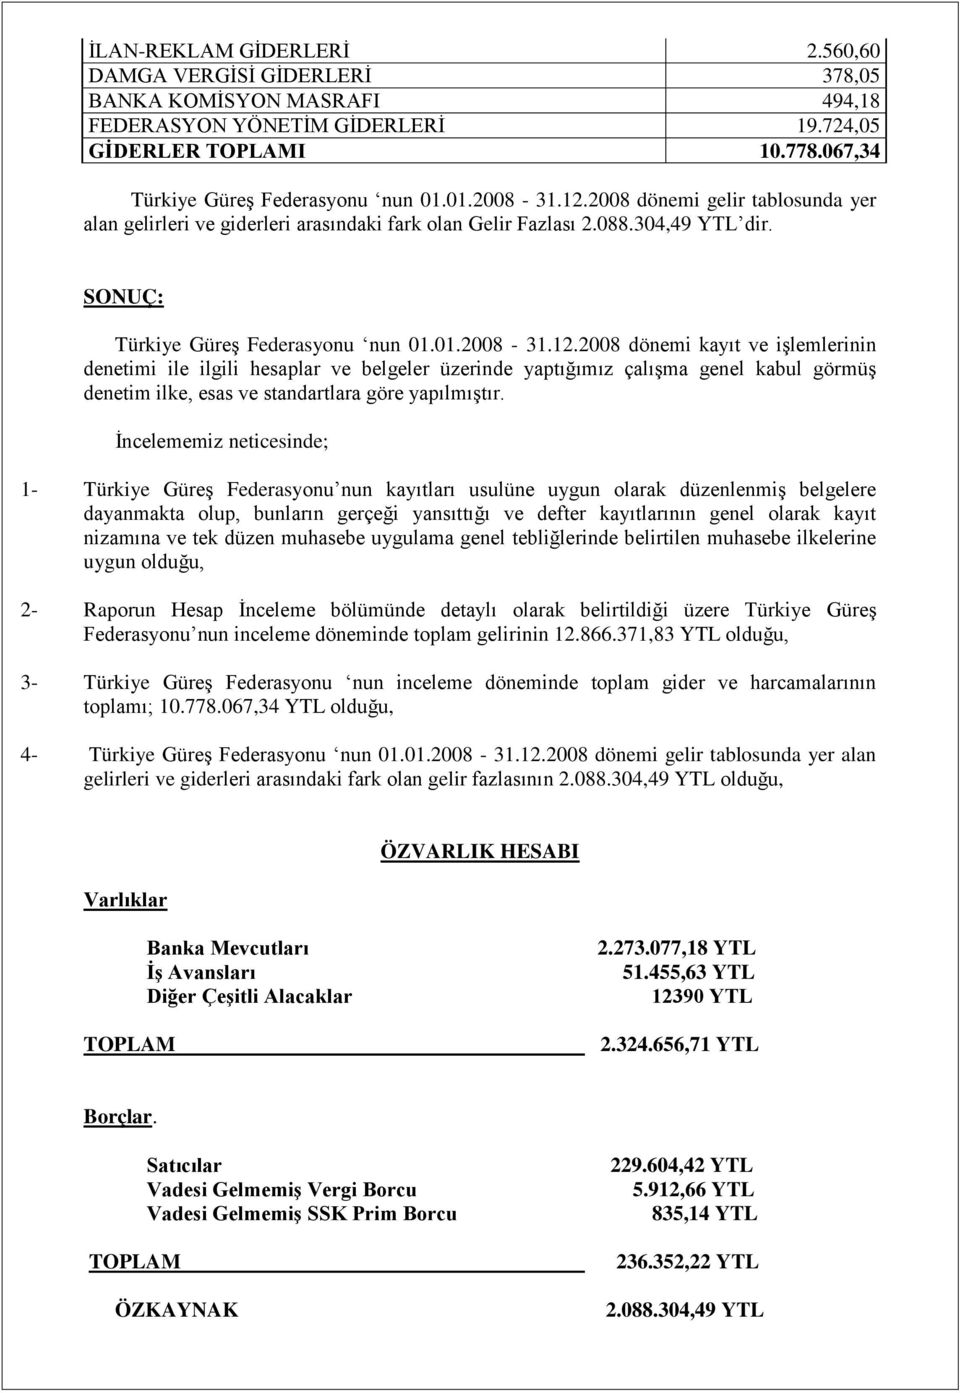 Ġncelememiz neticesinde; 1- Türkiye GüreĢ Federasyonu nun kayıtları usulüne uygun olarak düzenlenmiģ belgelere dayanmakta olup, bunların gerçeği yansıttığı ve defter kayıtlarının genel olarak kayıt